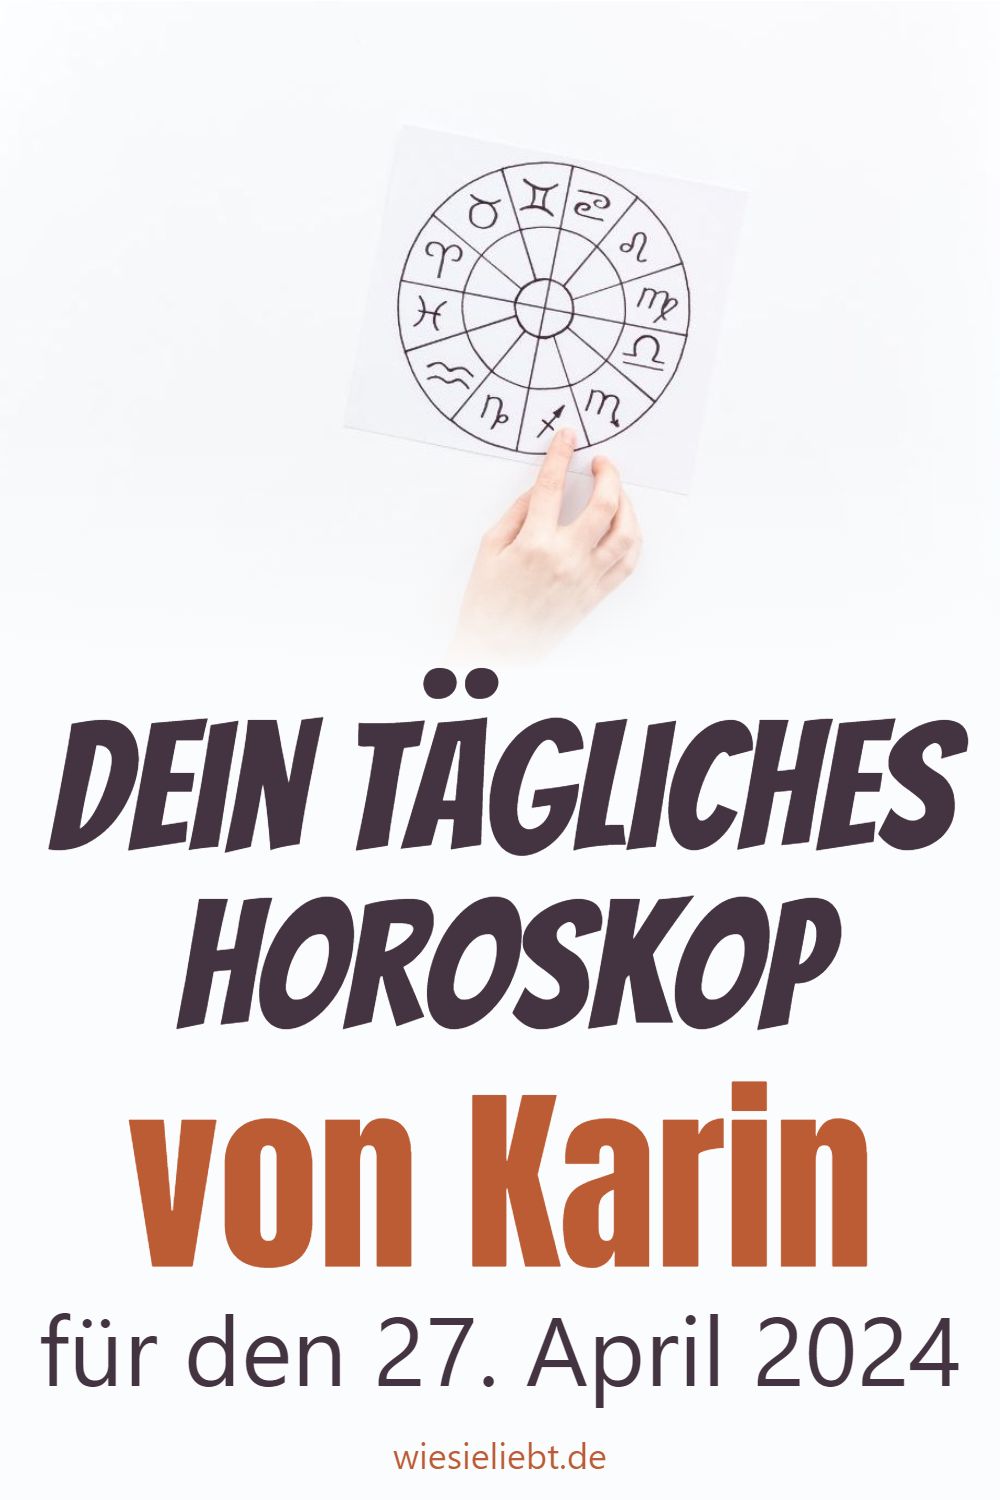 Dein tägliches Horoskop von Karin für den 27. April 2024